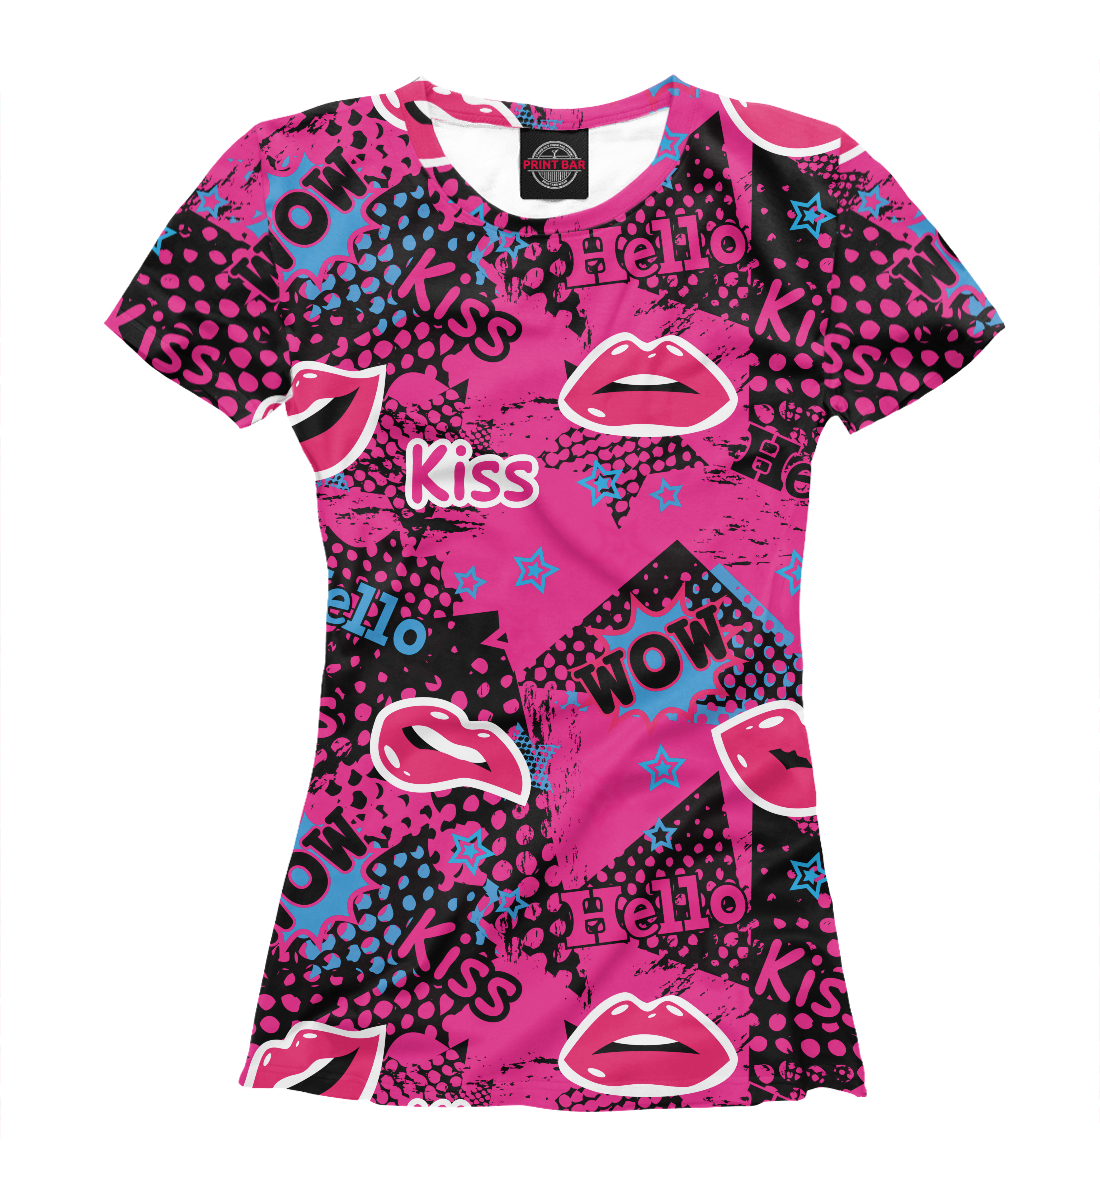 Футболка Kiss для девочек, артикул: 14F-506303-fut-1mp